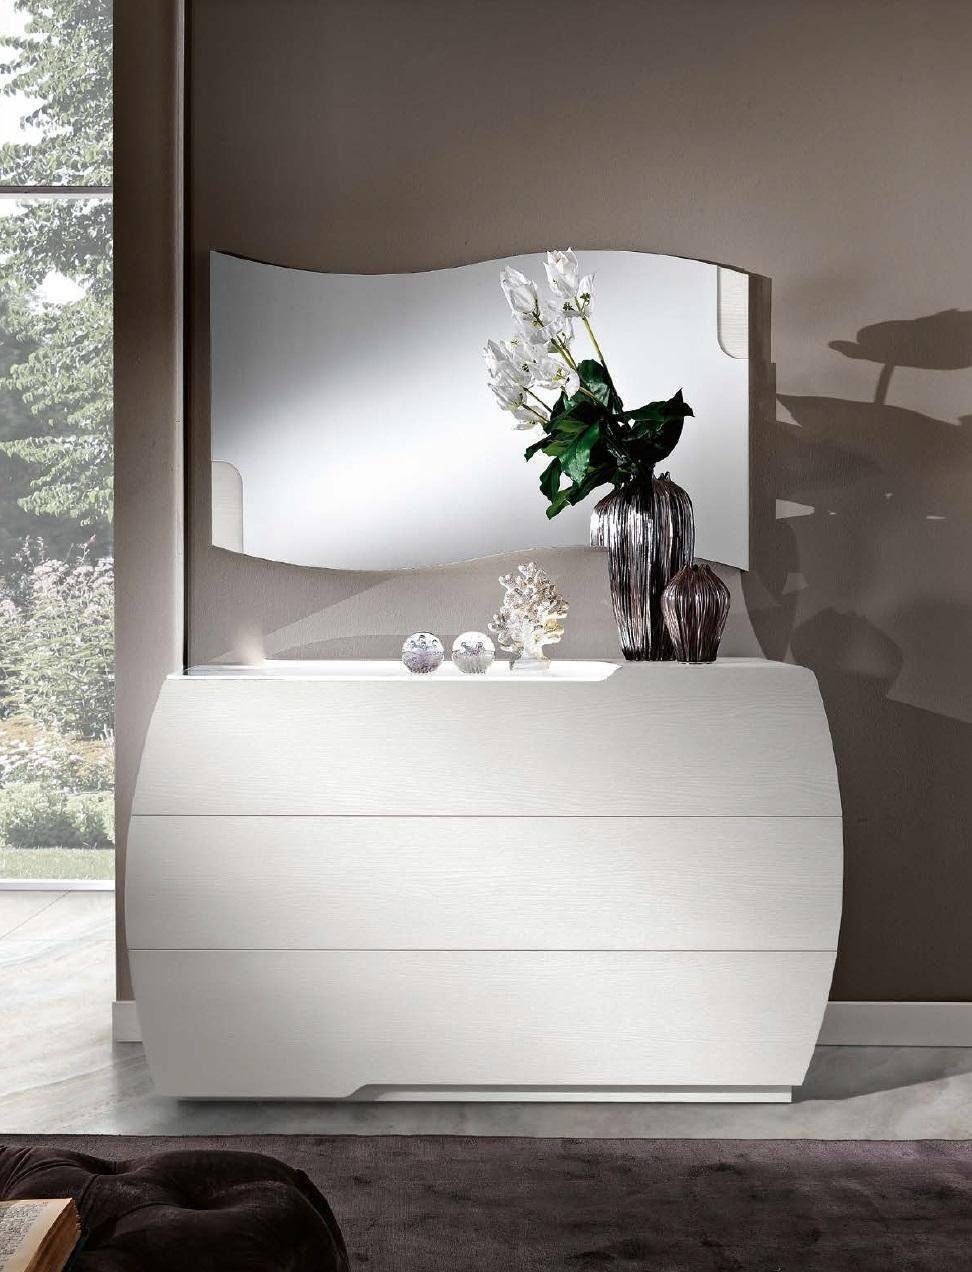 JVmoebel Spiegel, Hängespiegel Spiegel Wellig Modern Schlafzimmer Design Luxus